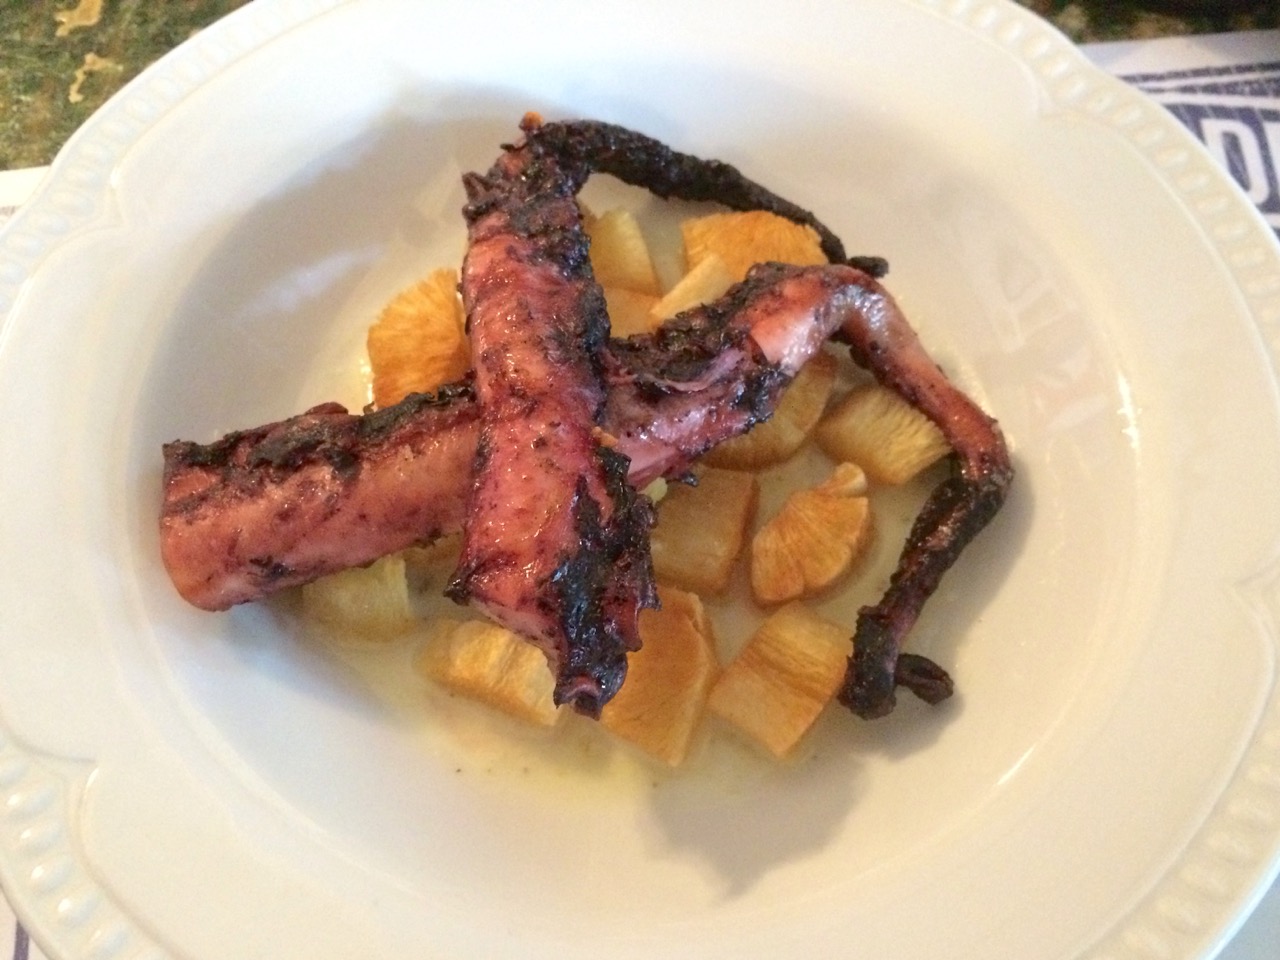 Grilled octopus (pulpo a la parilla) was good